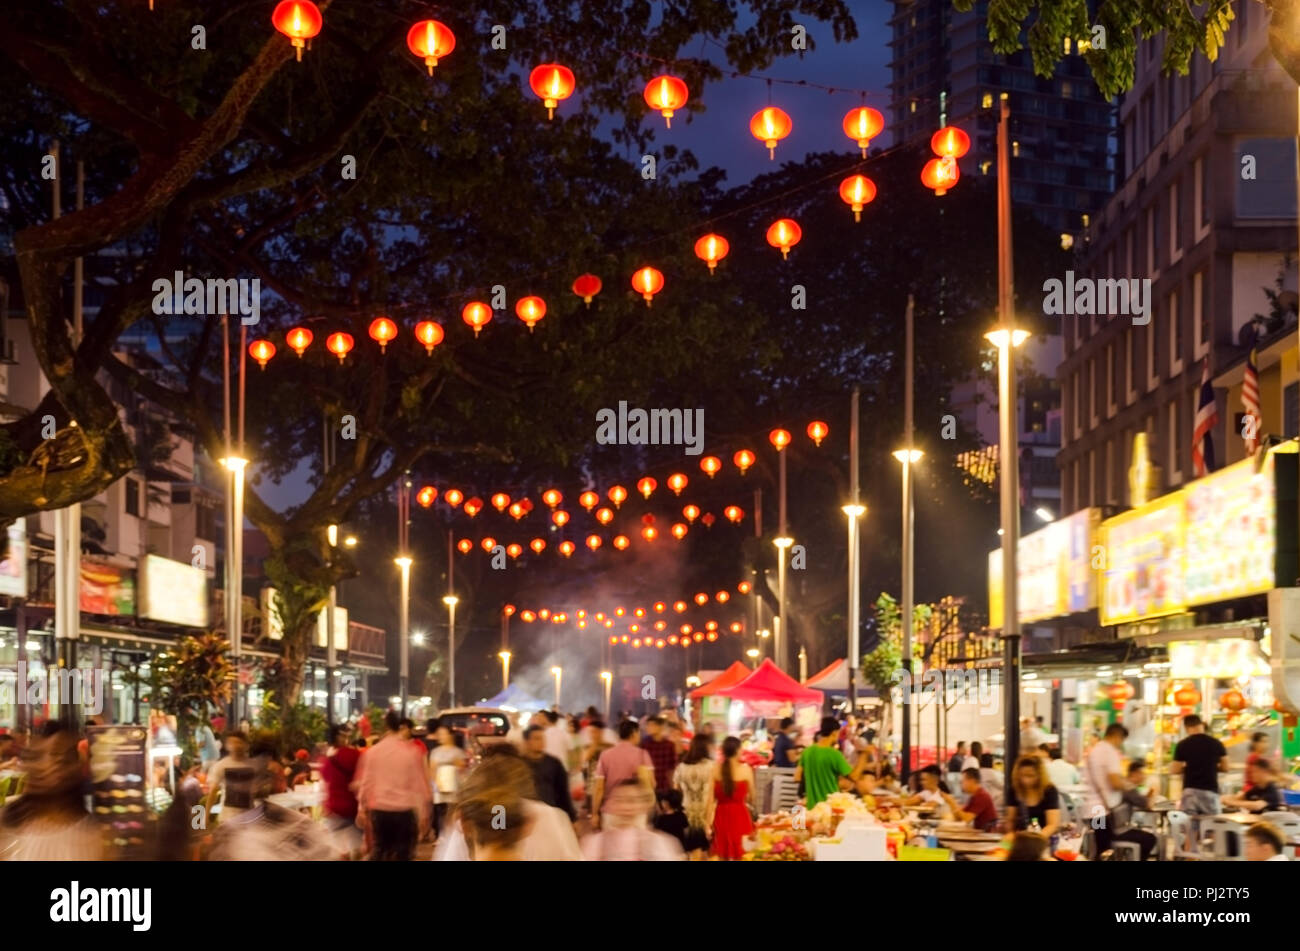 Jalan Alor In Nacht Strasse In Kuala Lumpur Entfernt Foto Von City Night Street Unscharfe Menschen Zu Fuss Beleuchtung Werbetafeln Stockfotografie Alamy